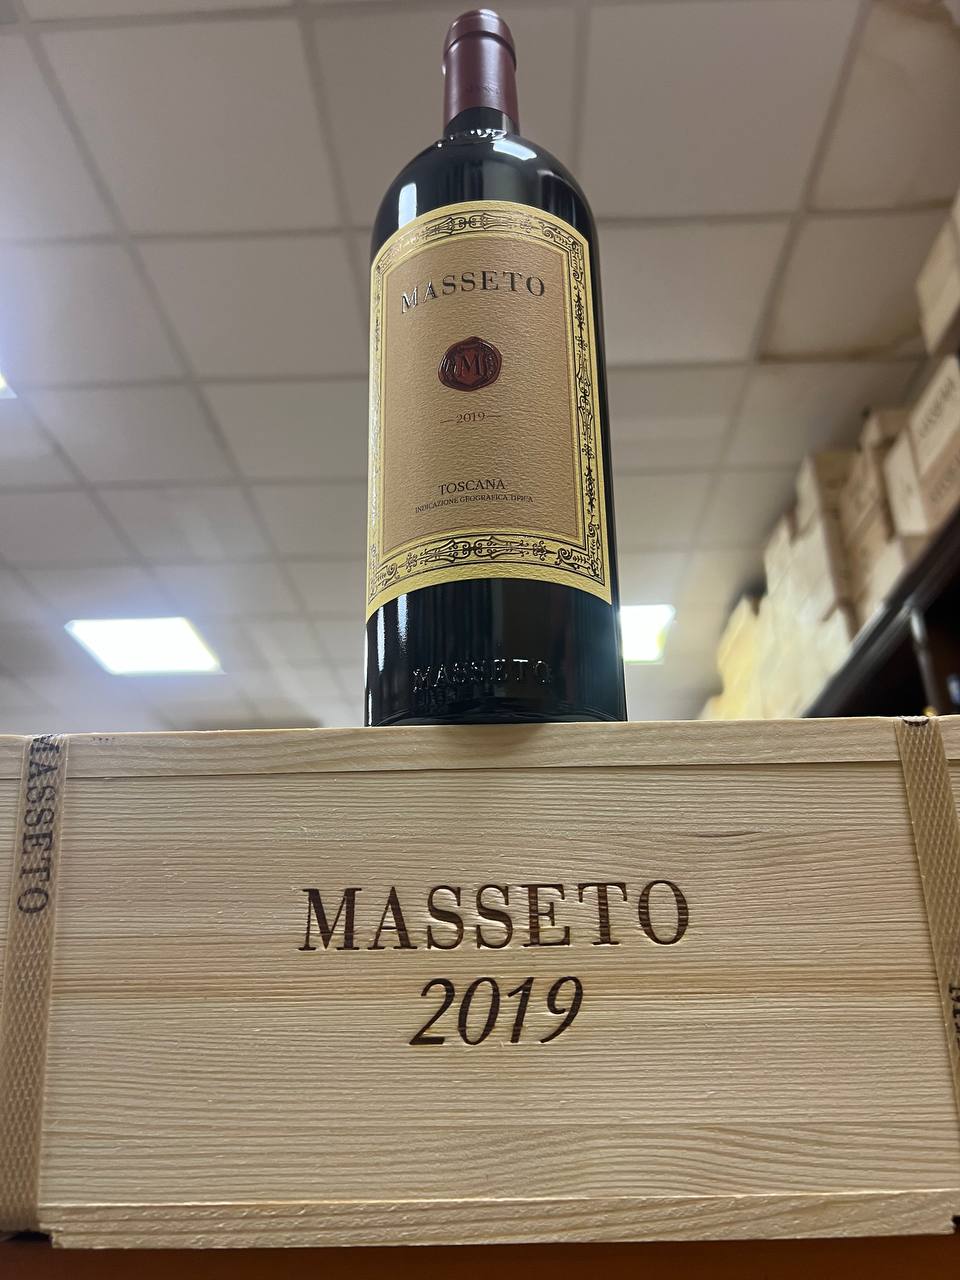 Masseto 2019 - Tenuta Masseto- Rosso IGT Toscana